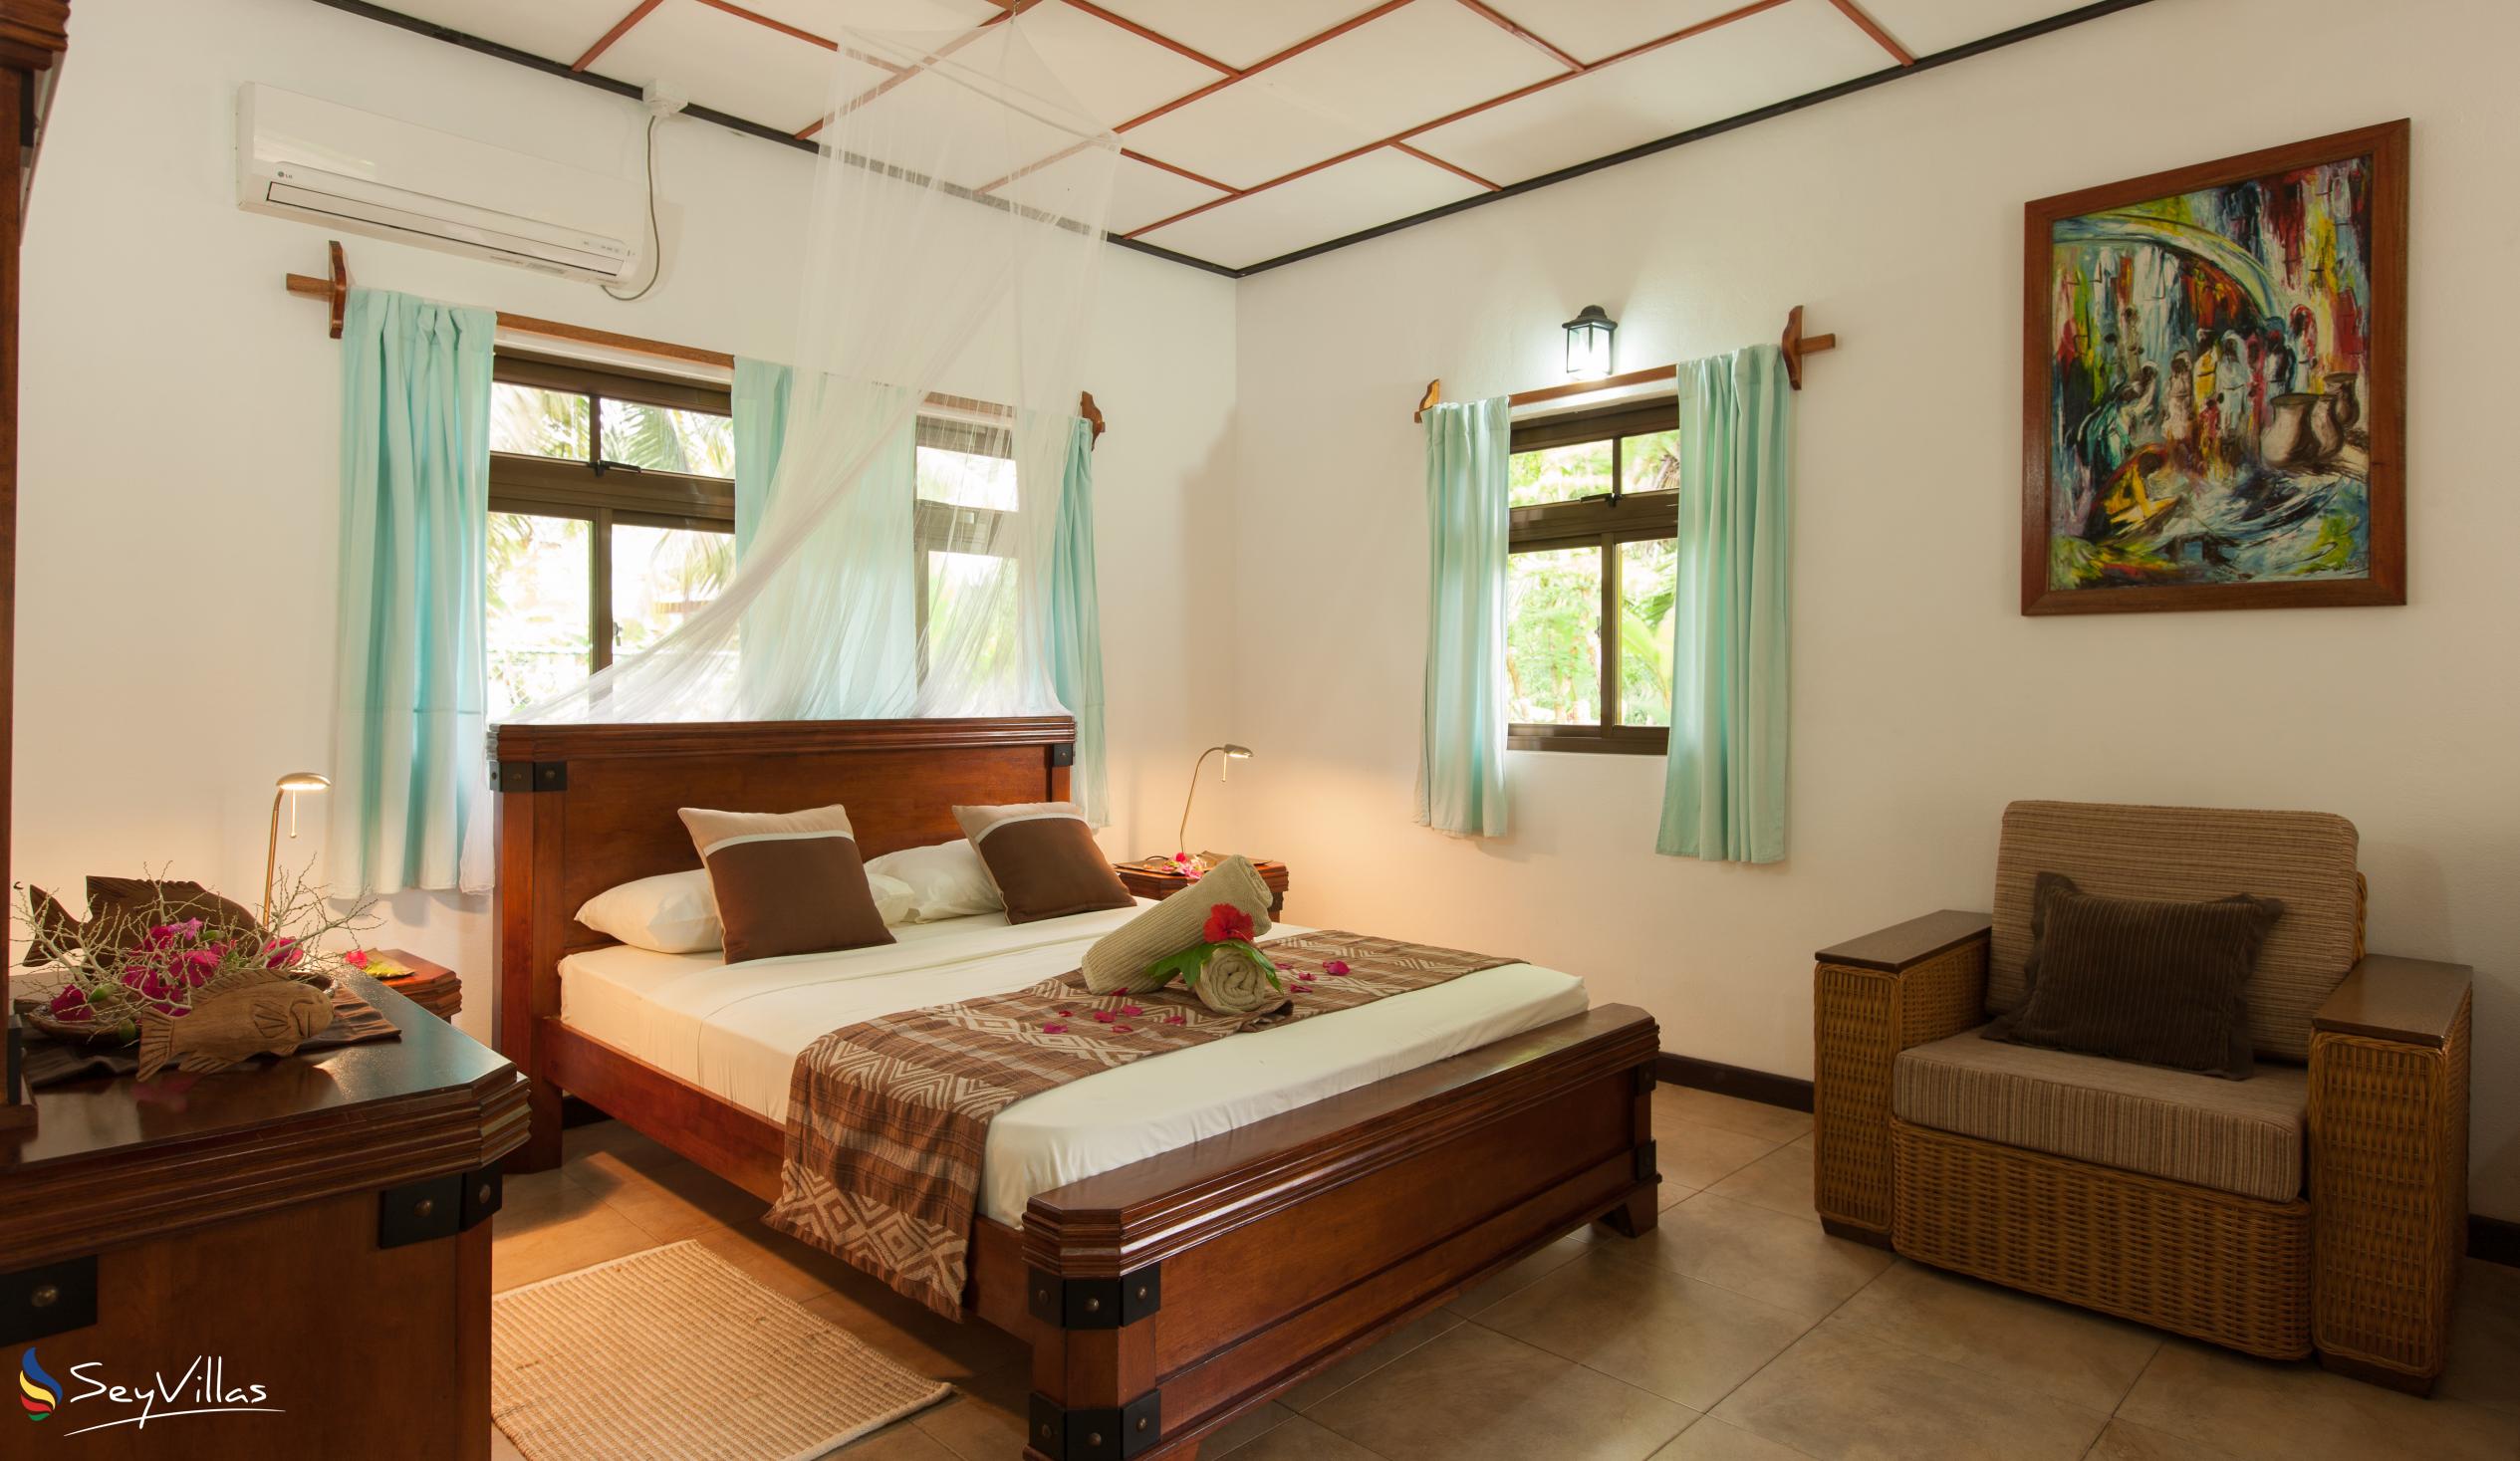 Foto 101: Domaine Les Rochers - Bungalow Palmier 2 chambres - La Digue (Seychelles)